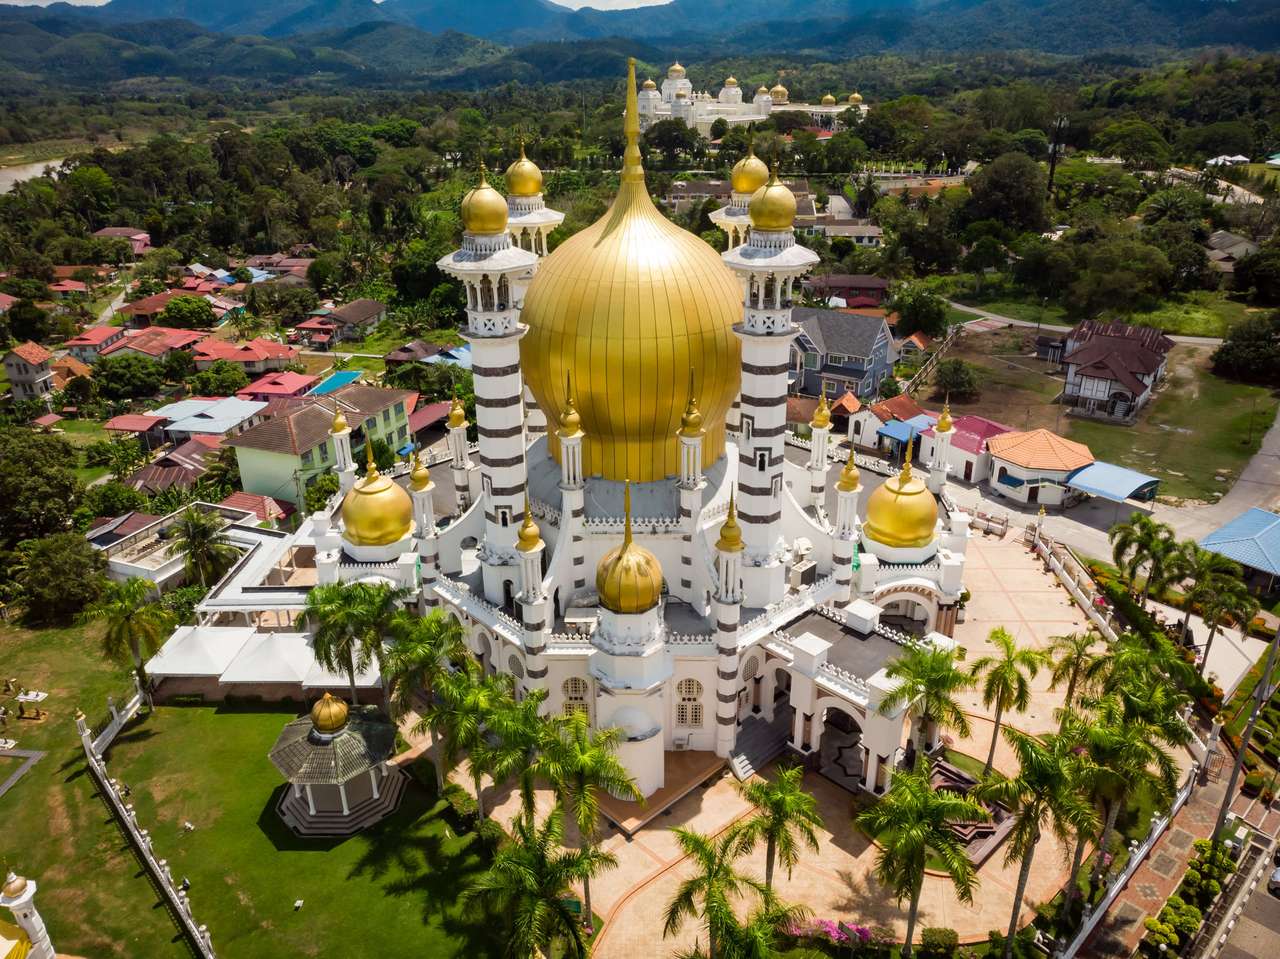 Masjid ubudiah